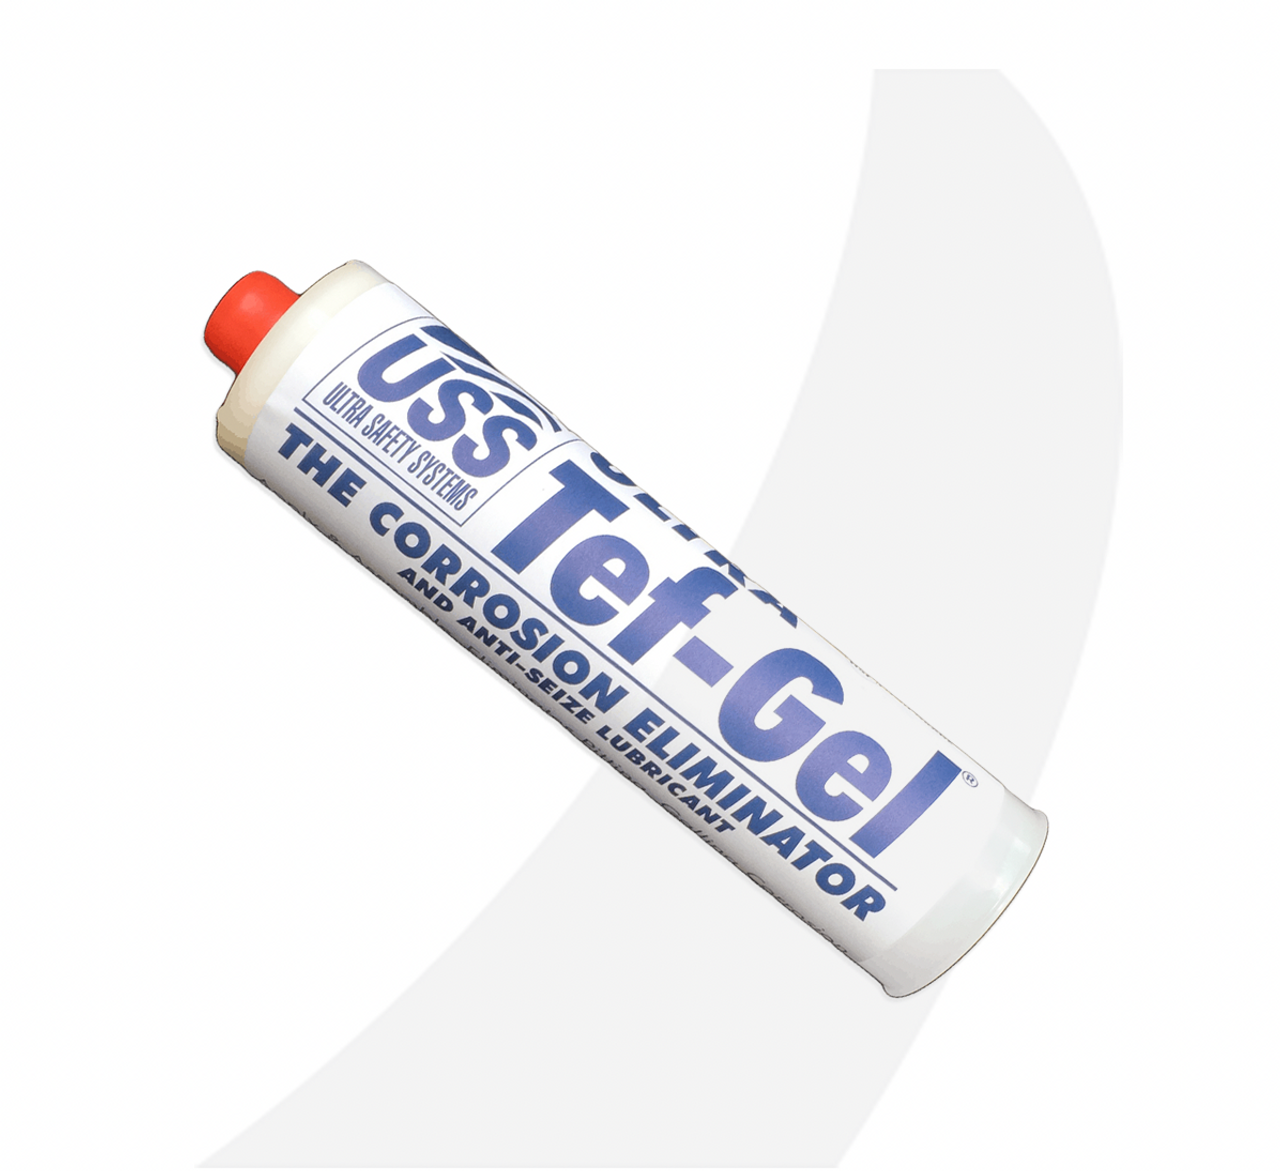 3M–5200 Fast Cure Polyurethane Adhesive/Sealant, White - Vela